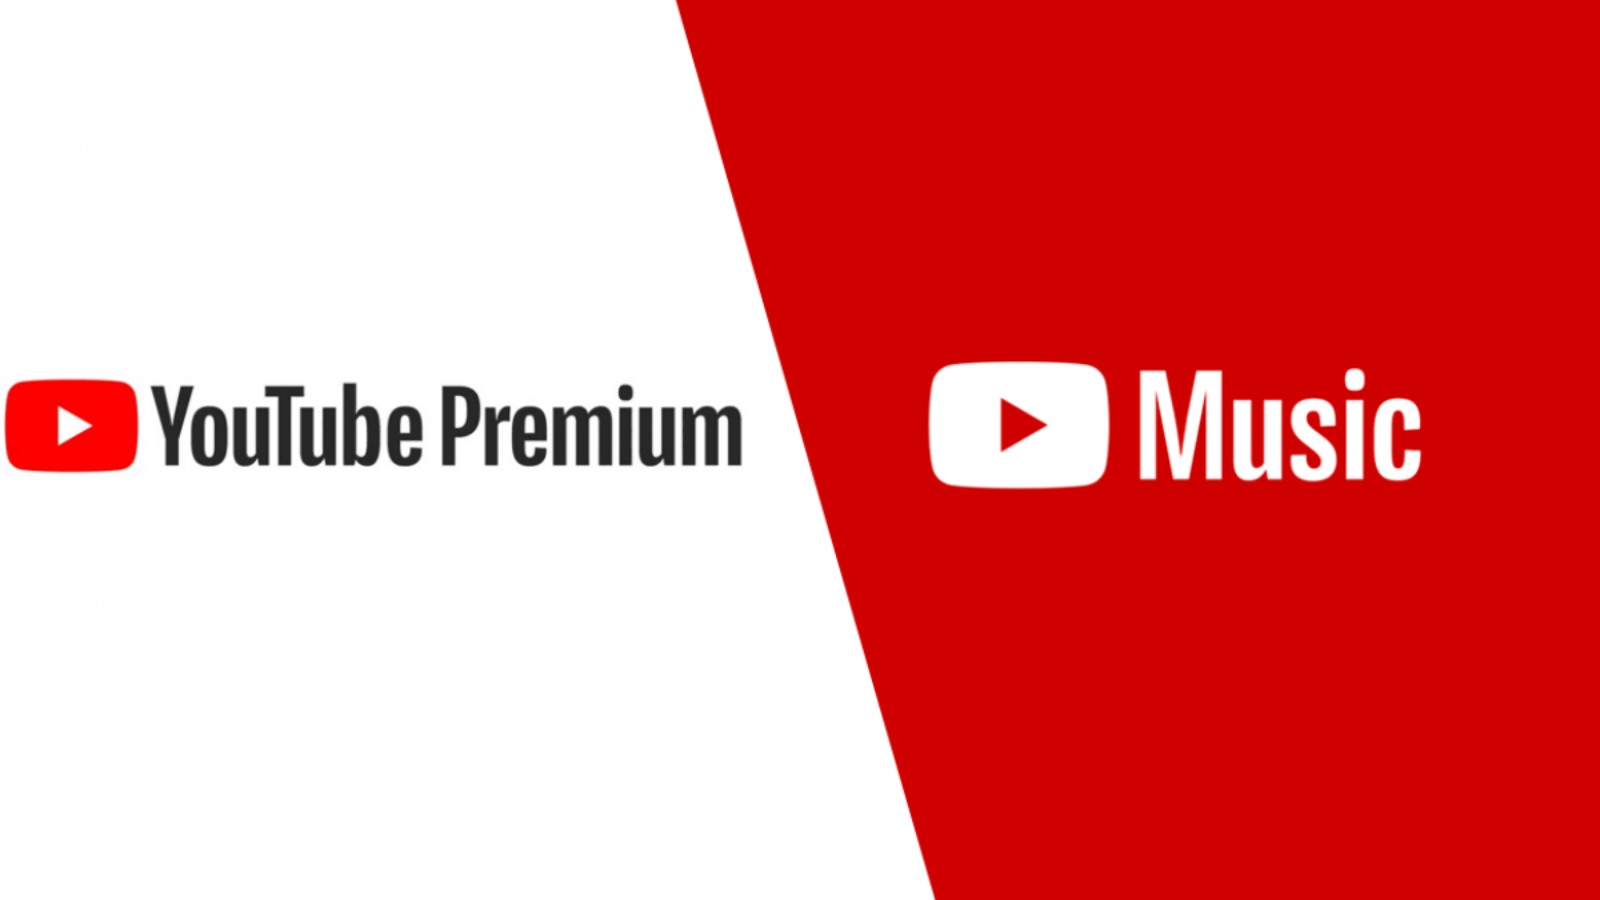 Ютуб мьюзик цена. Youtube премиум. Ютуб Premium. Ютуб премиум картинка. Ютуб Мьюзик премиум.